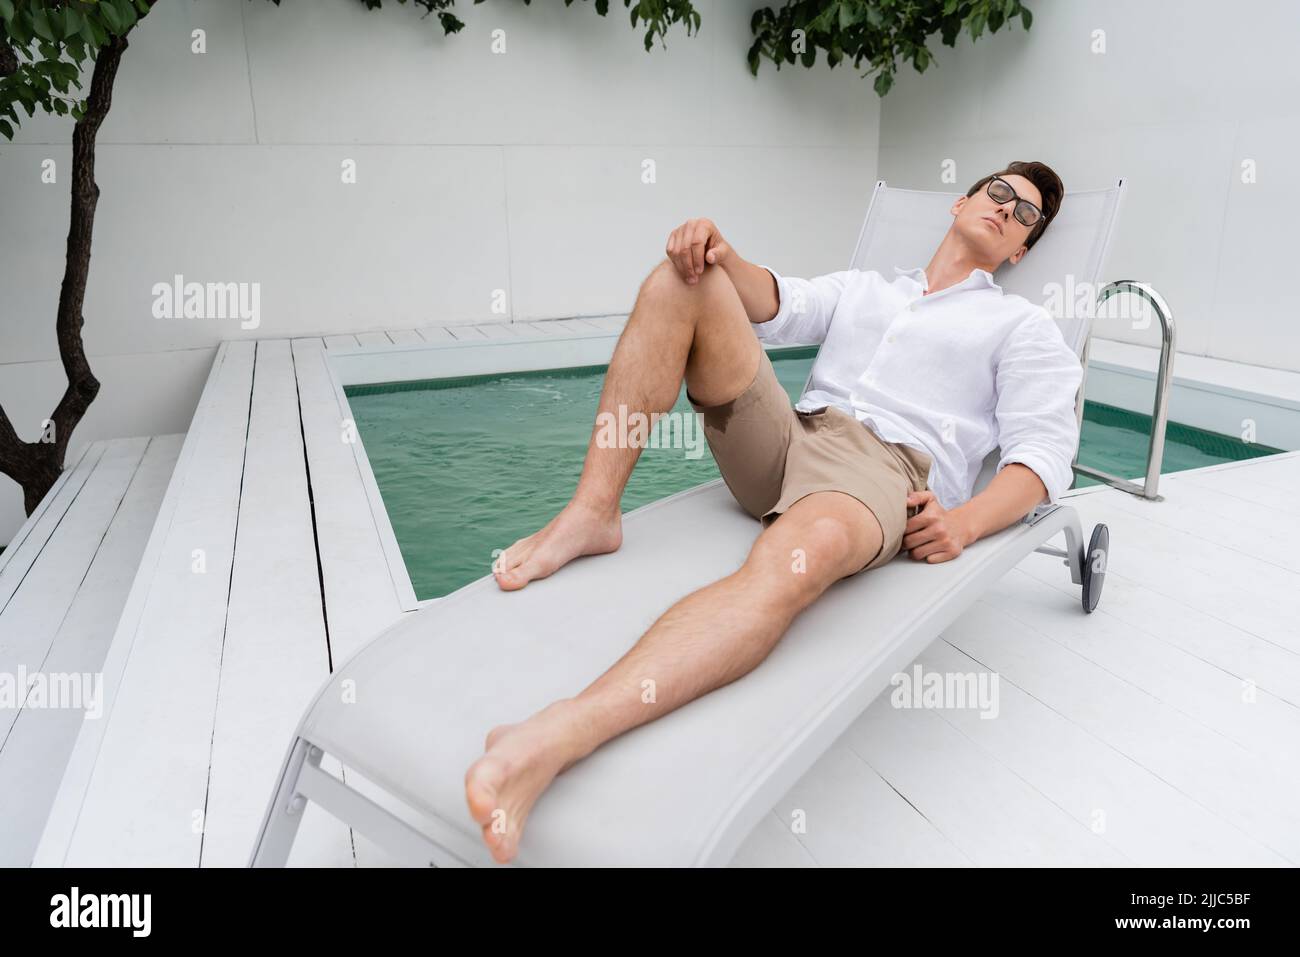 Barfuß Mann in Shorts und Brillen, der auf dem Liegestuhl in der Nähe des Pools liegt Stockfoto